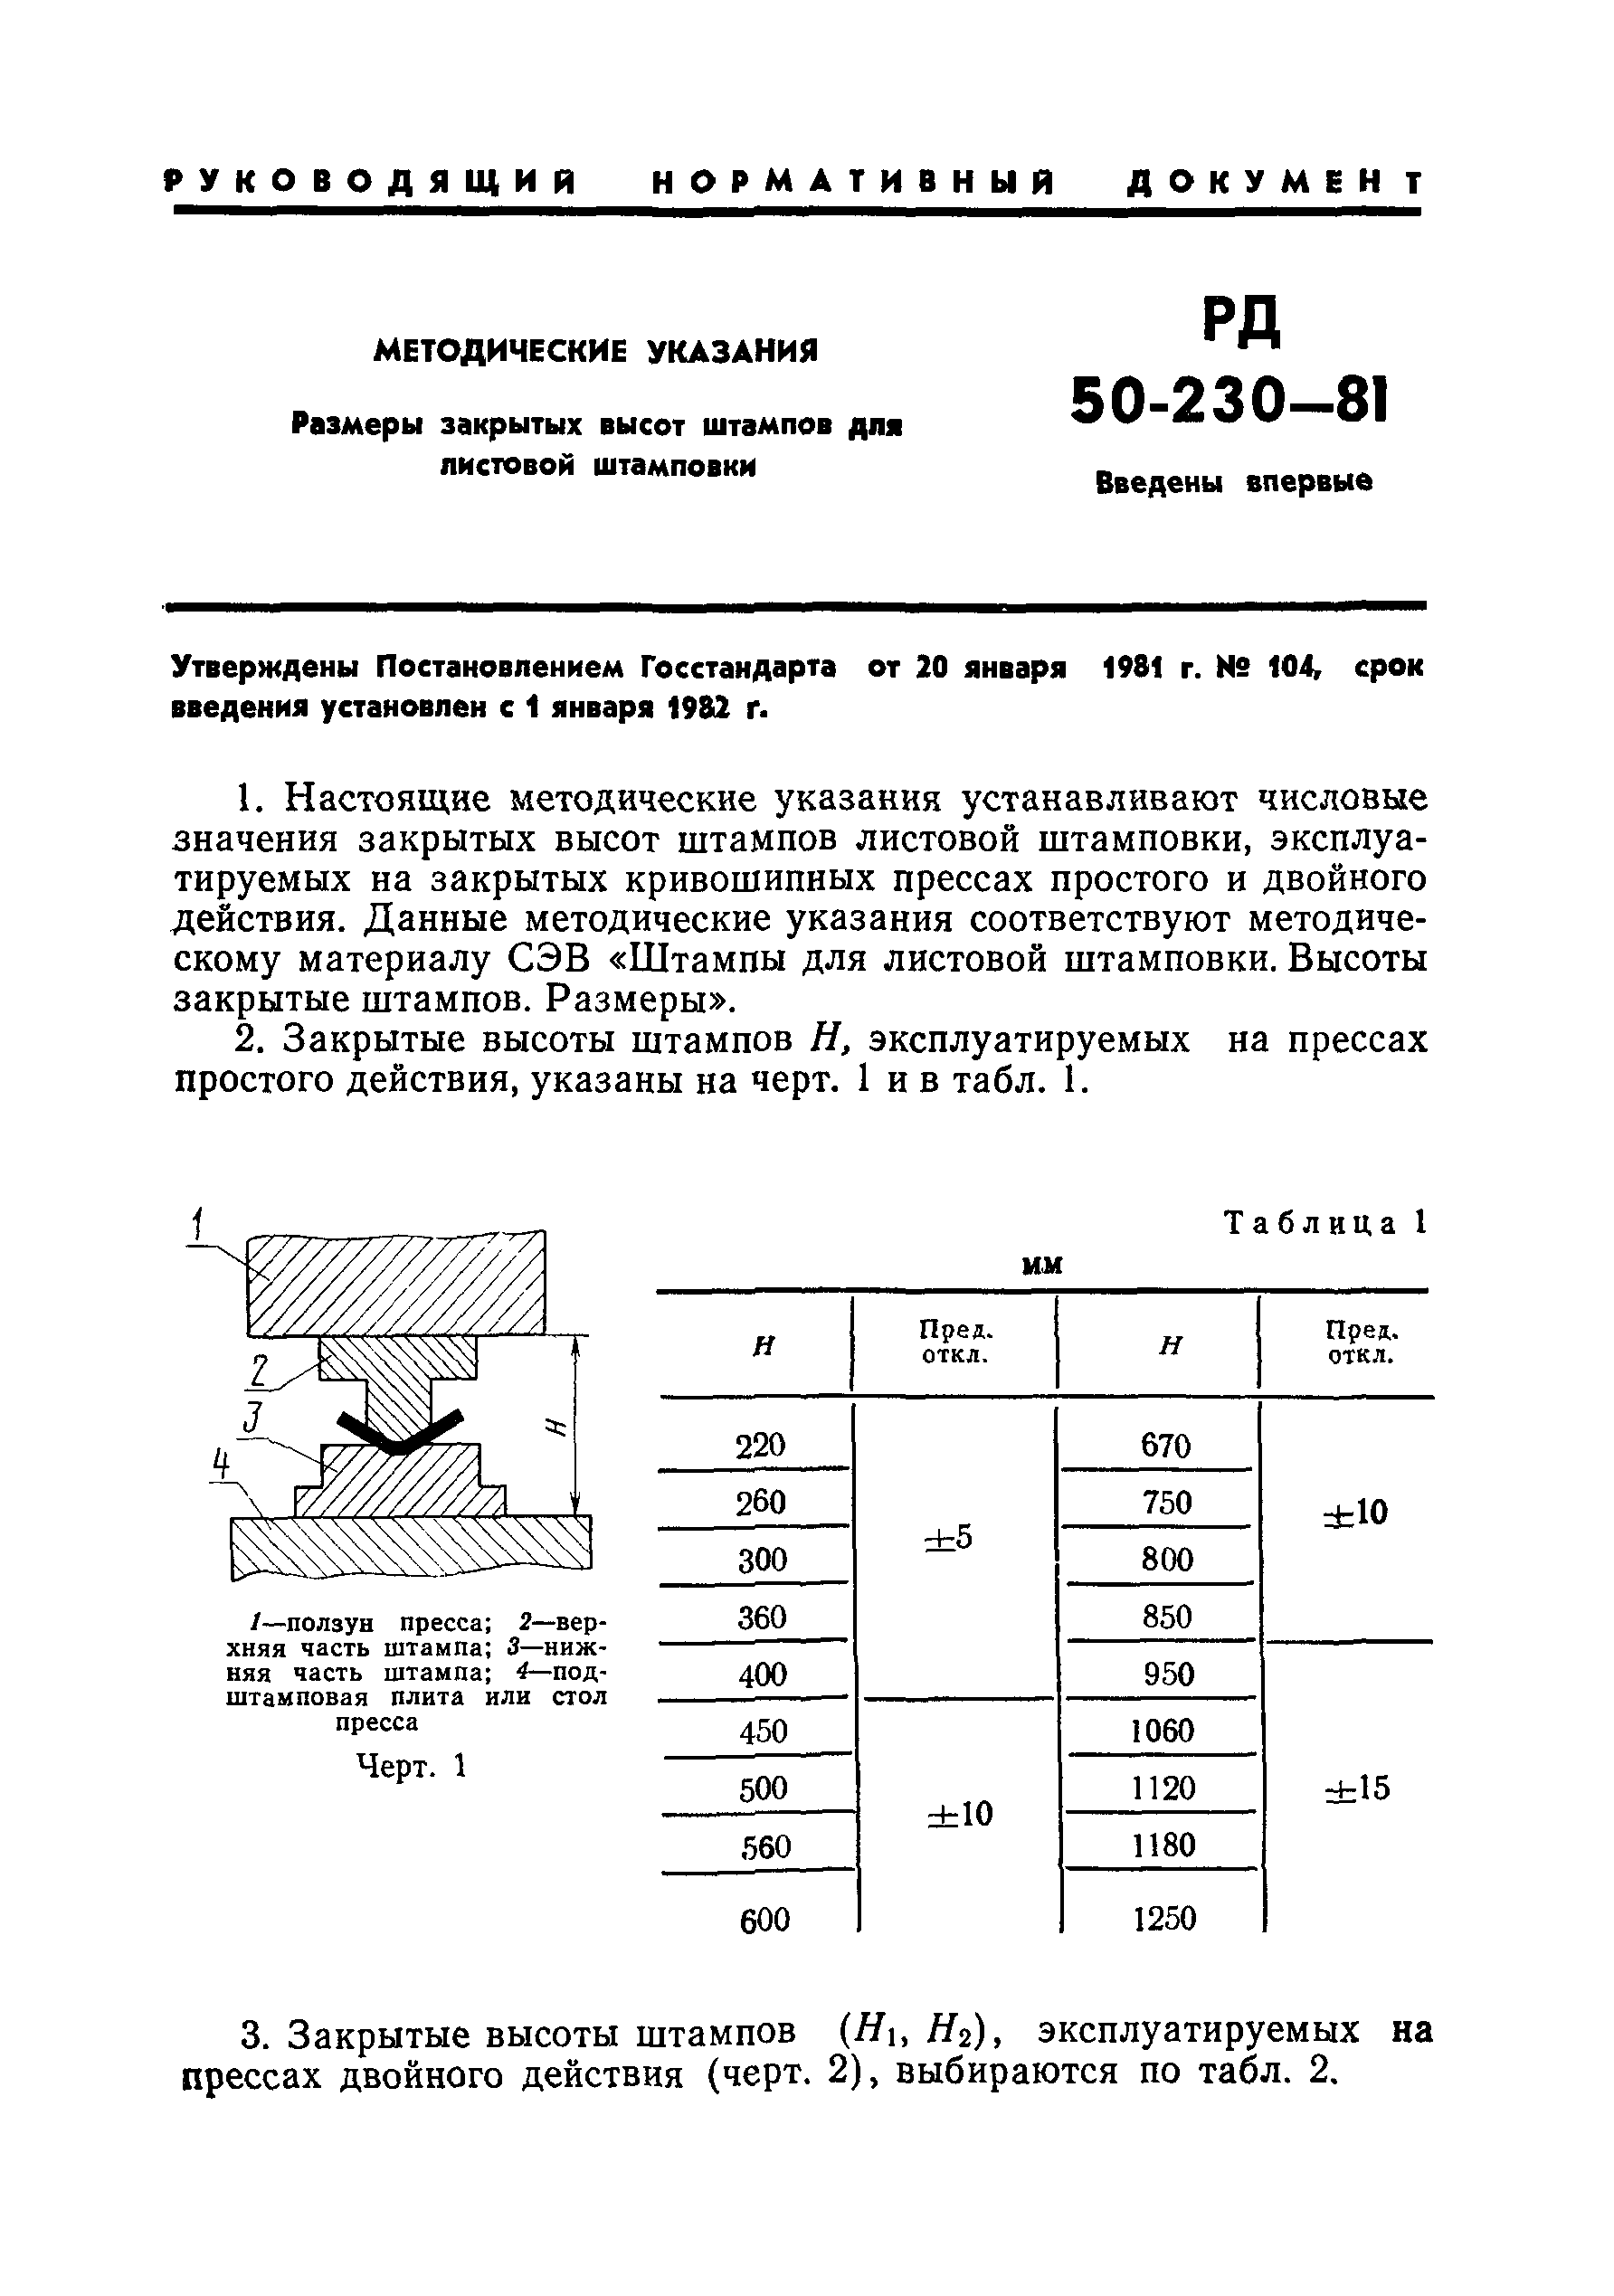 РД 50-230-81